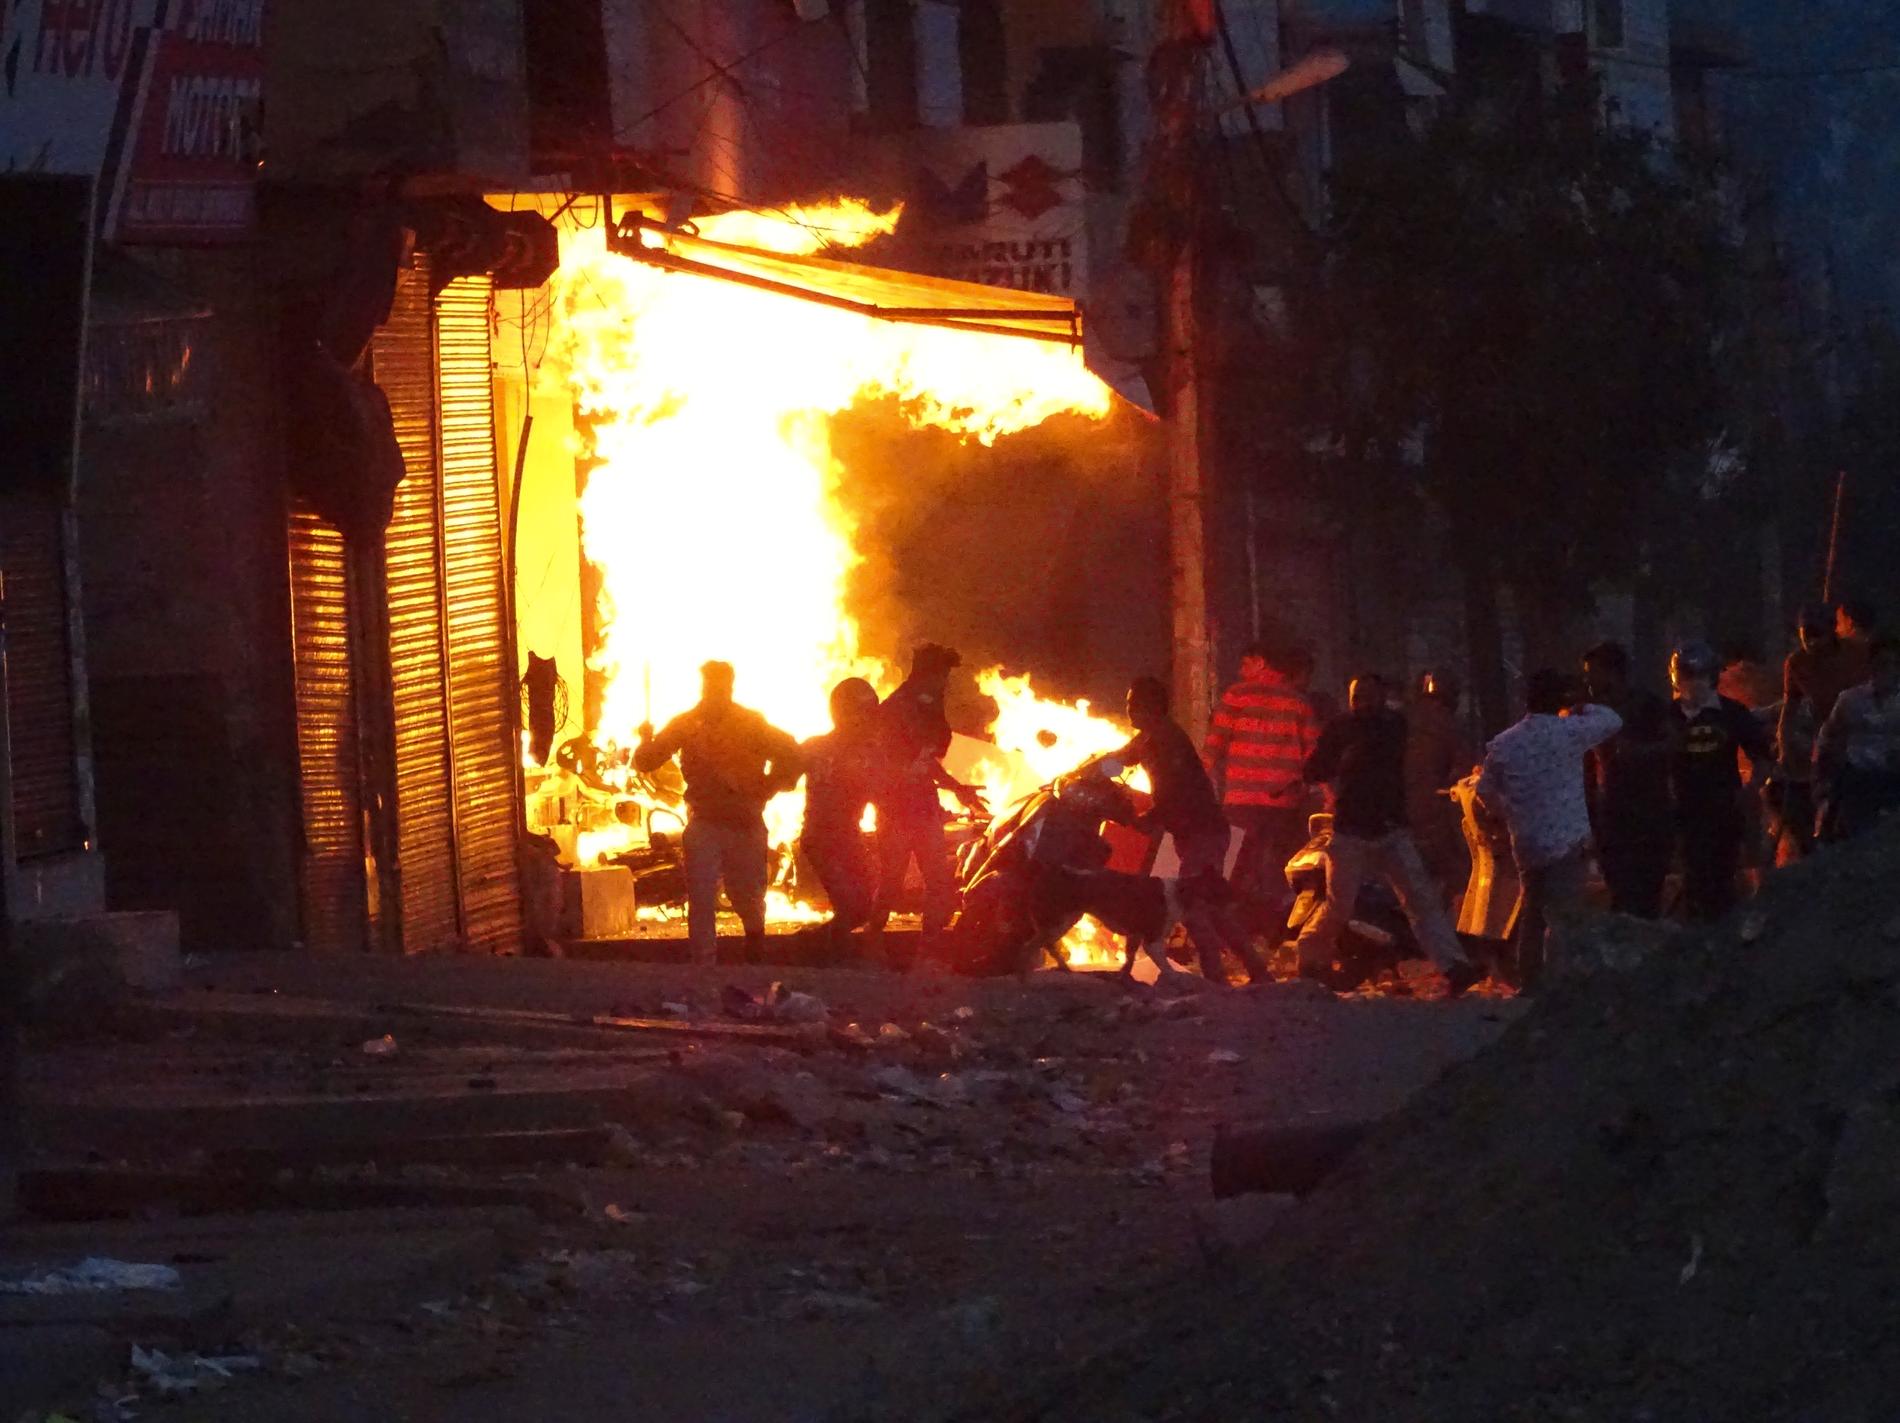 En butik sätts i brand av demonstranter under de våldsamma sammandrabbningarna i New Delhi under tisdagen.